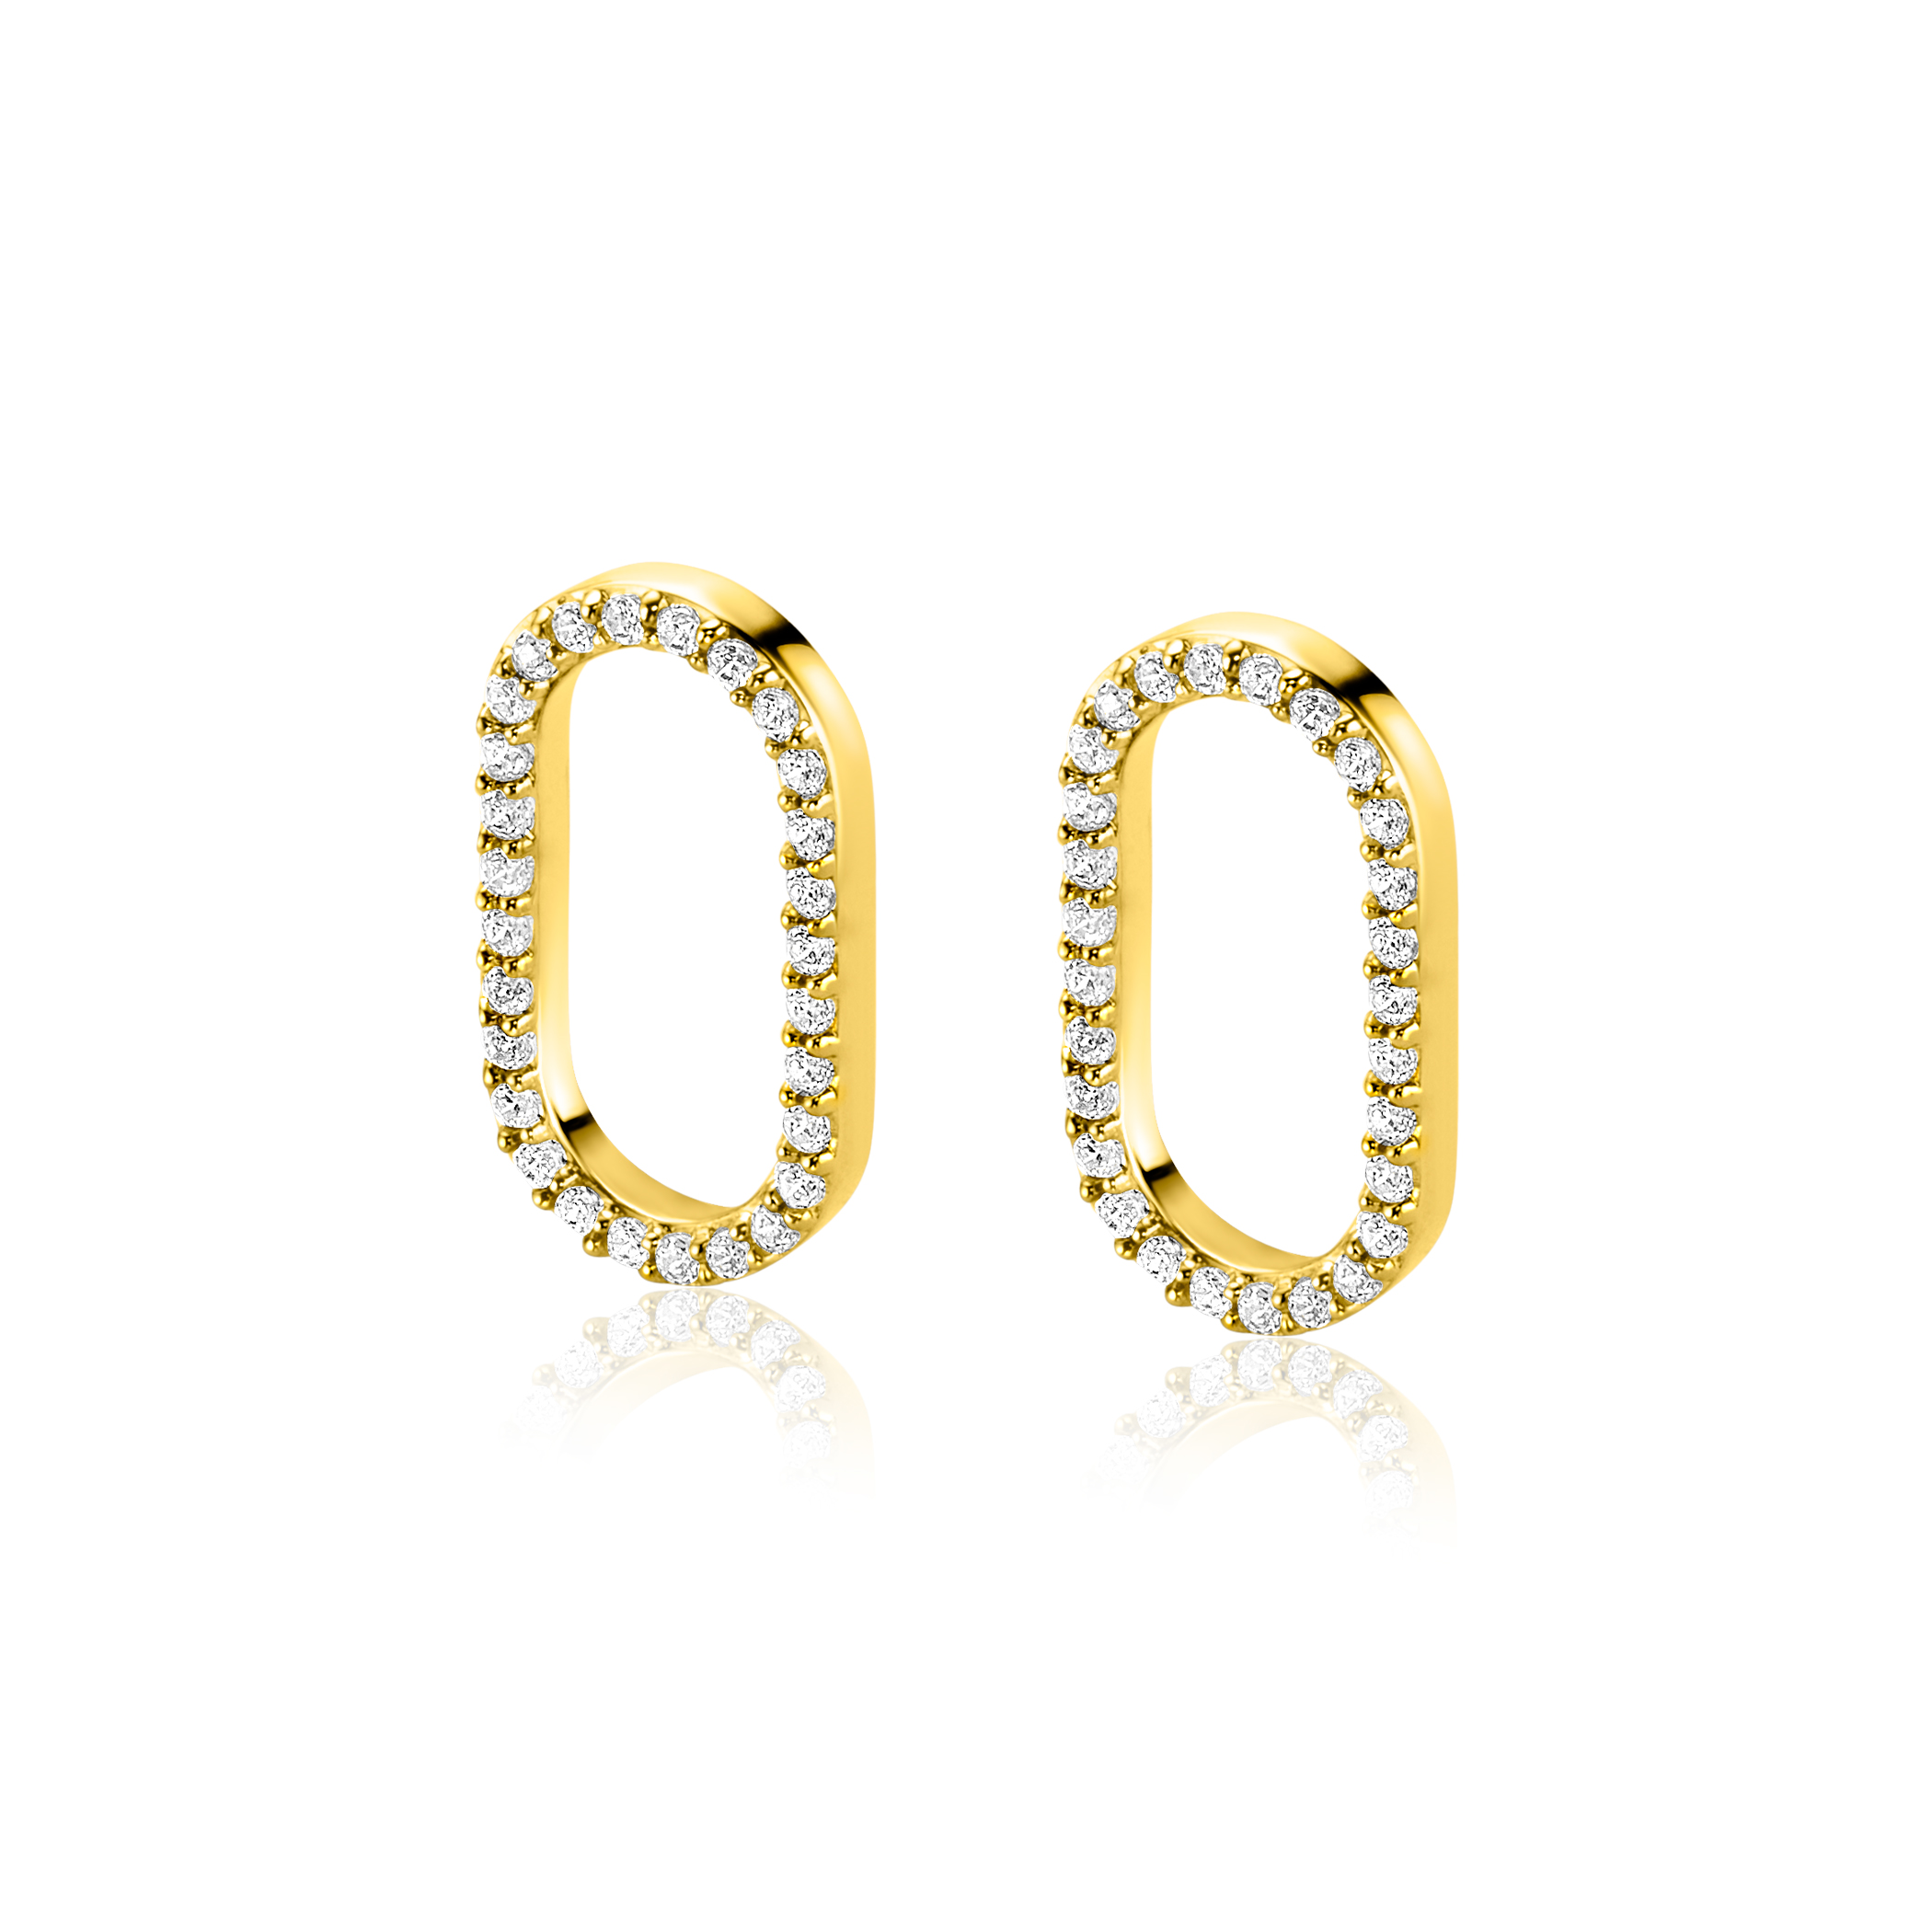 15mm ZINZI Gold Plated Sterling Silver Earrings Pendants Open Oval White Zirconias ZICH2444 (excl. hoop earrings)